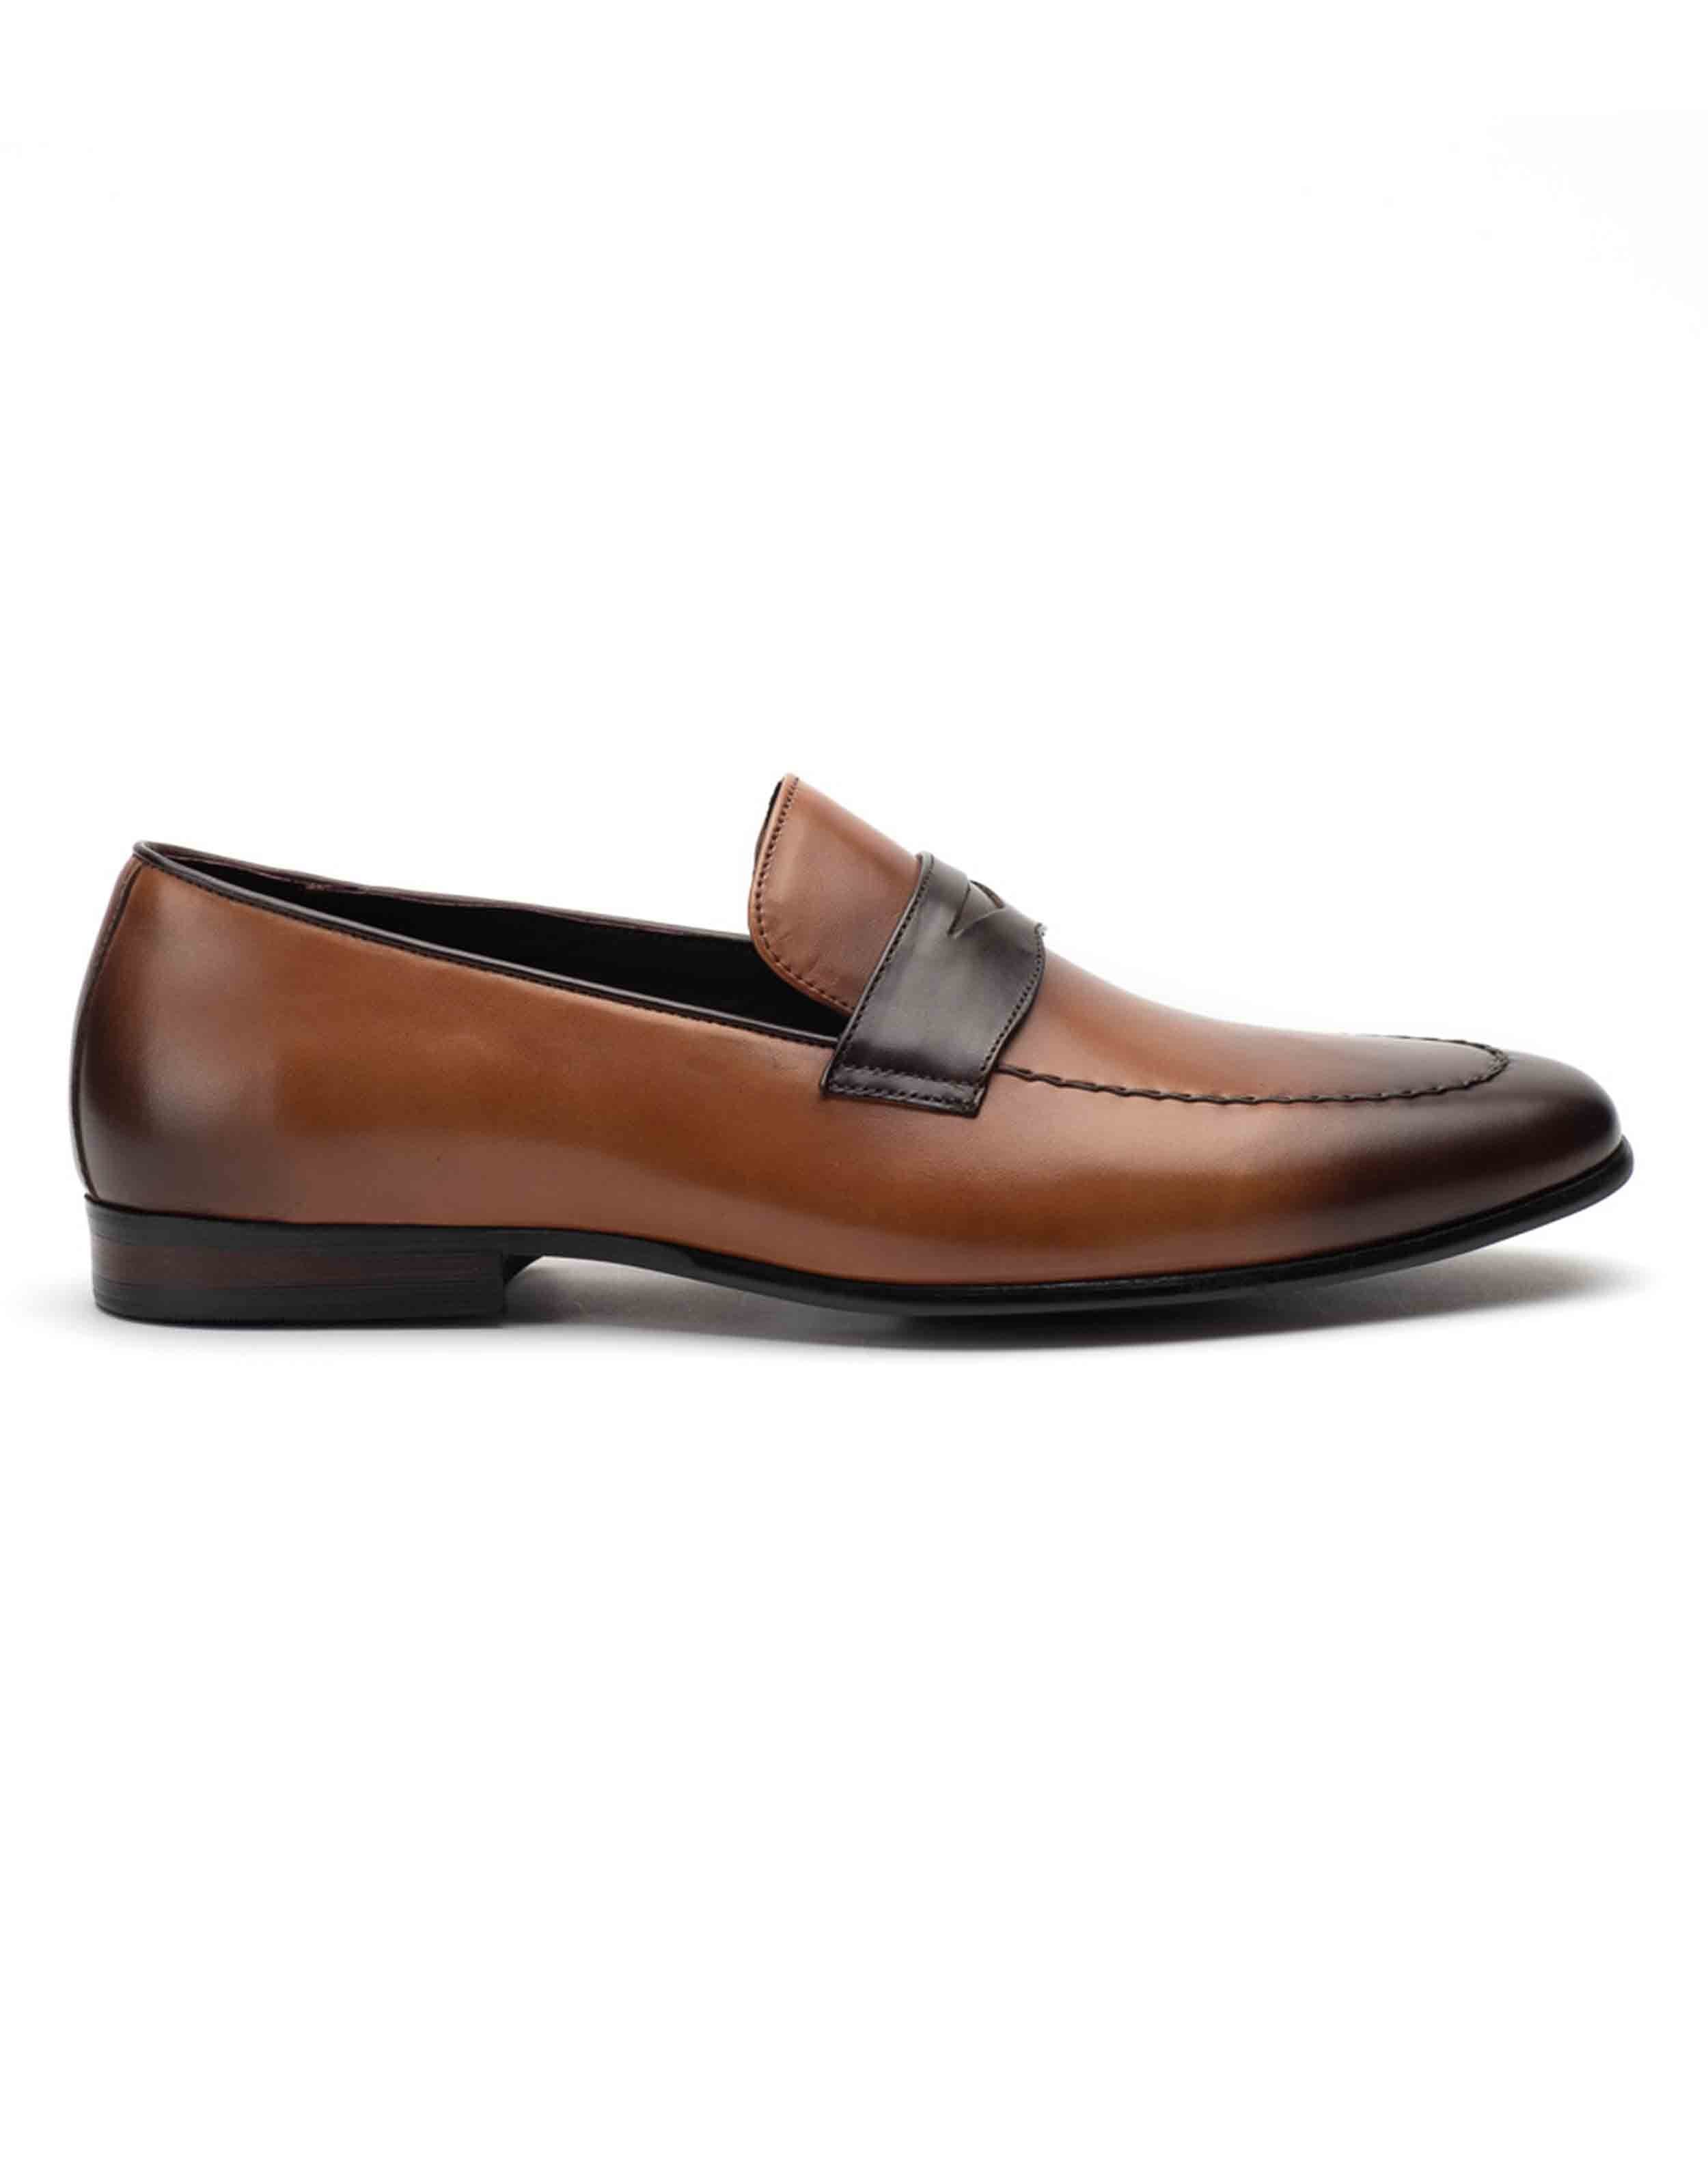 Premium Footwear Brand for Men and Women | Heel & Buckle London – HEEL ...